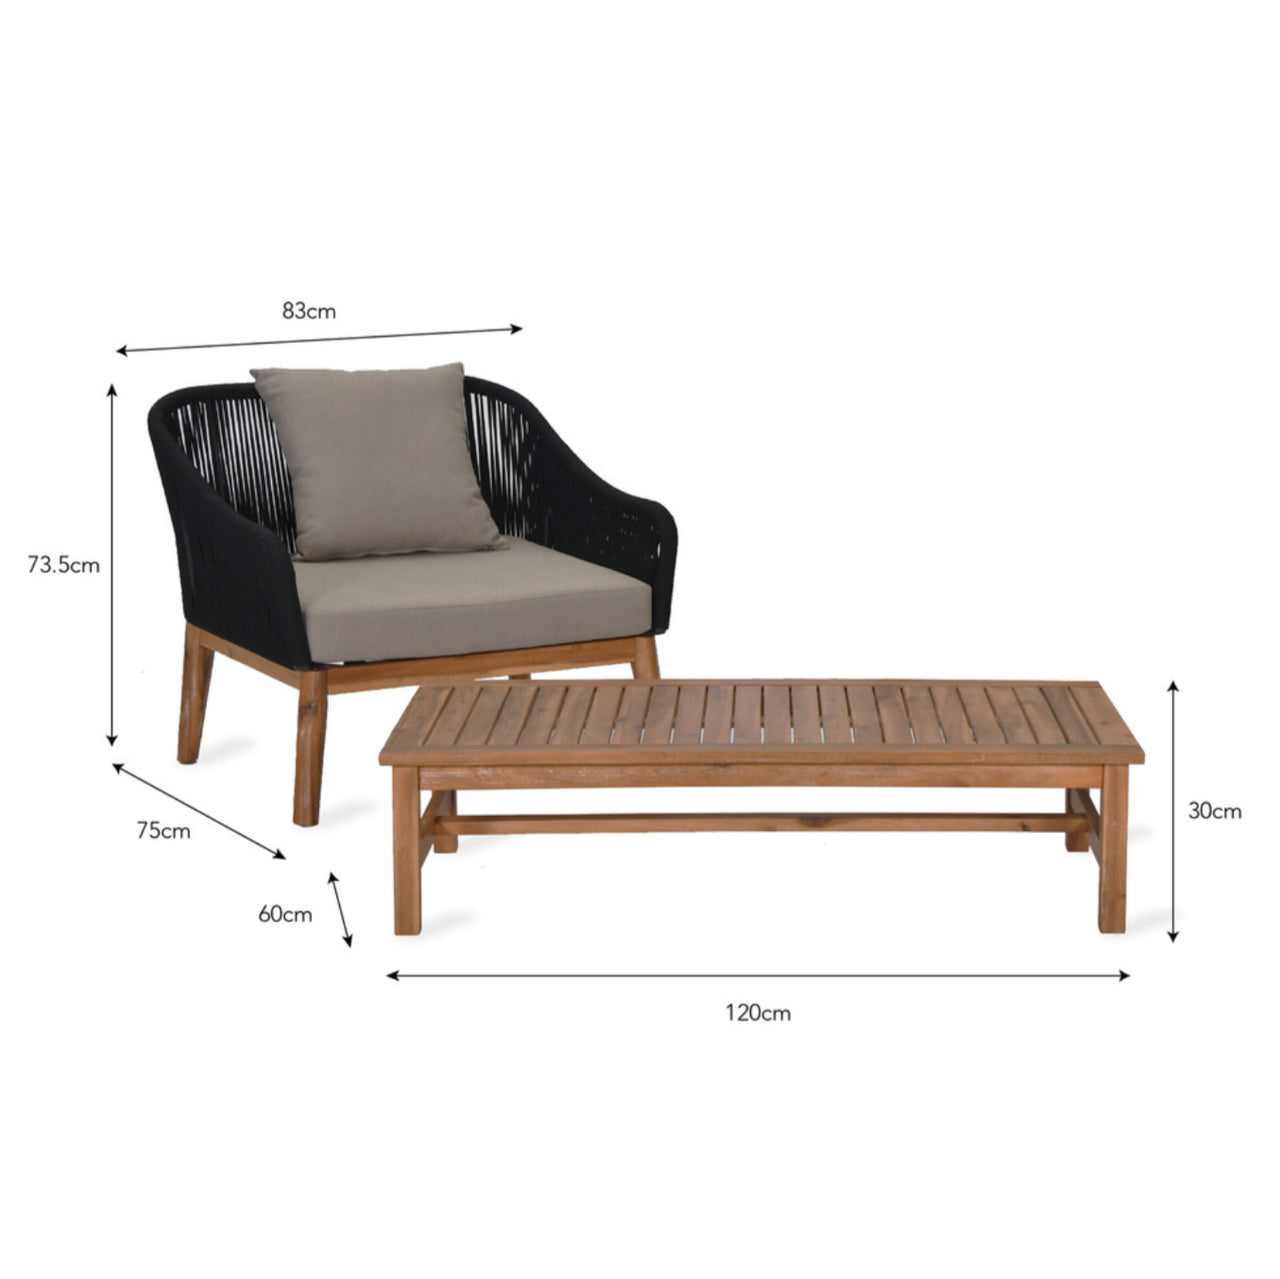 Luccombe armchair set outdoor acacia wood garden trading